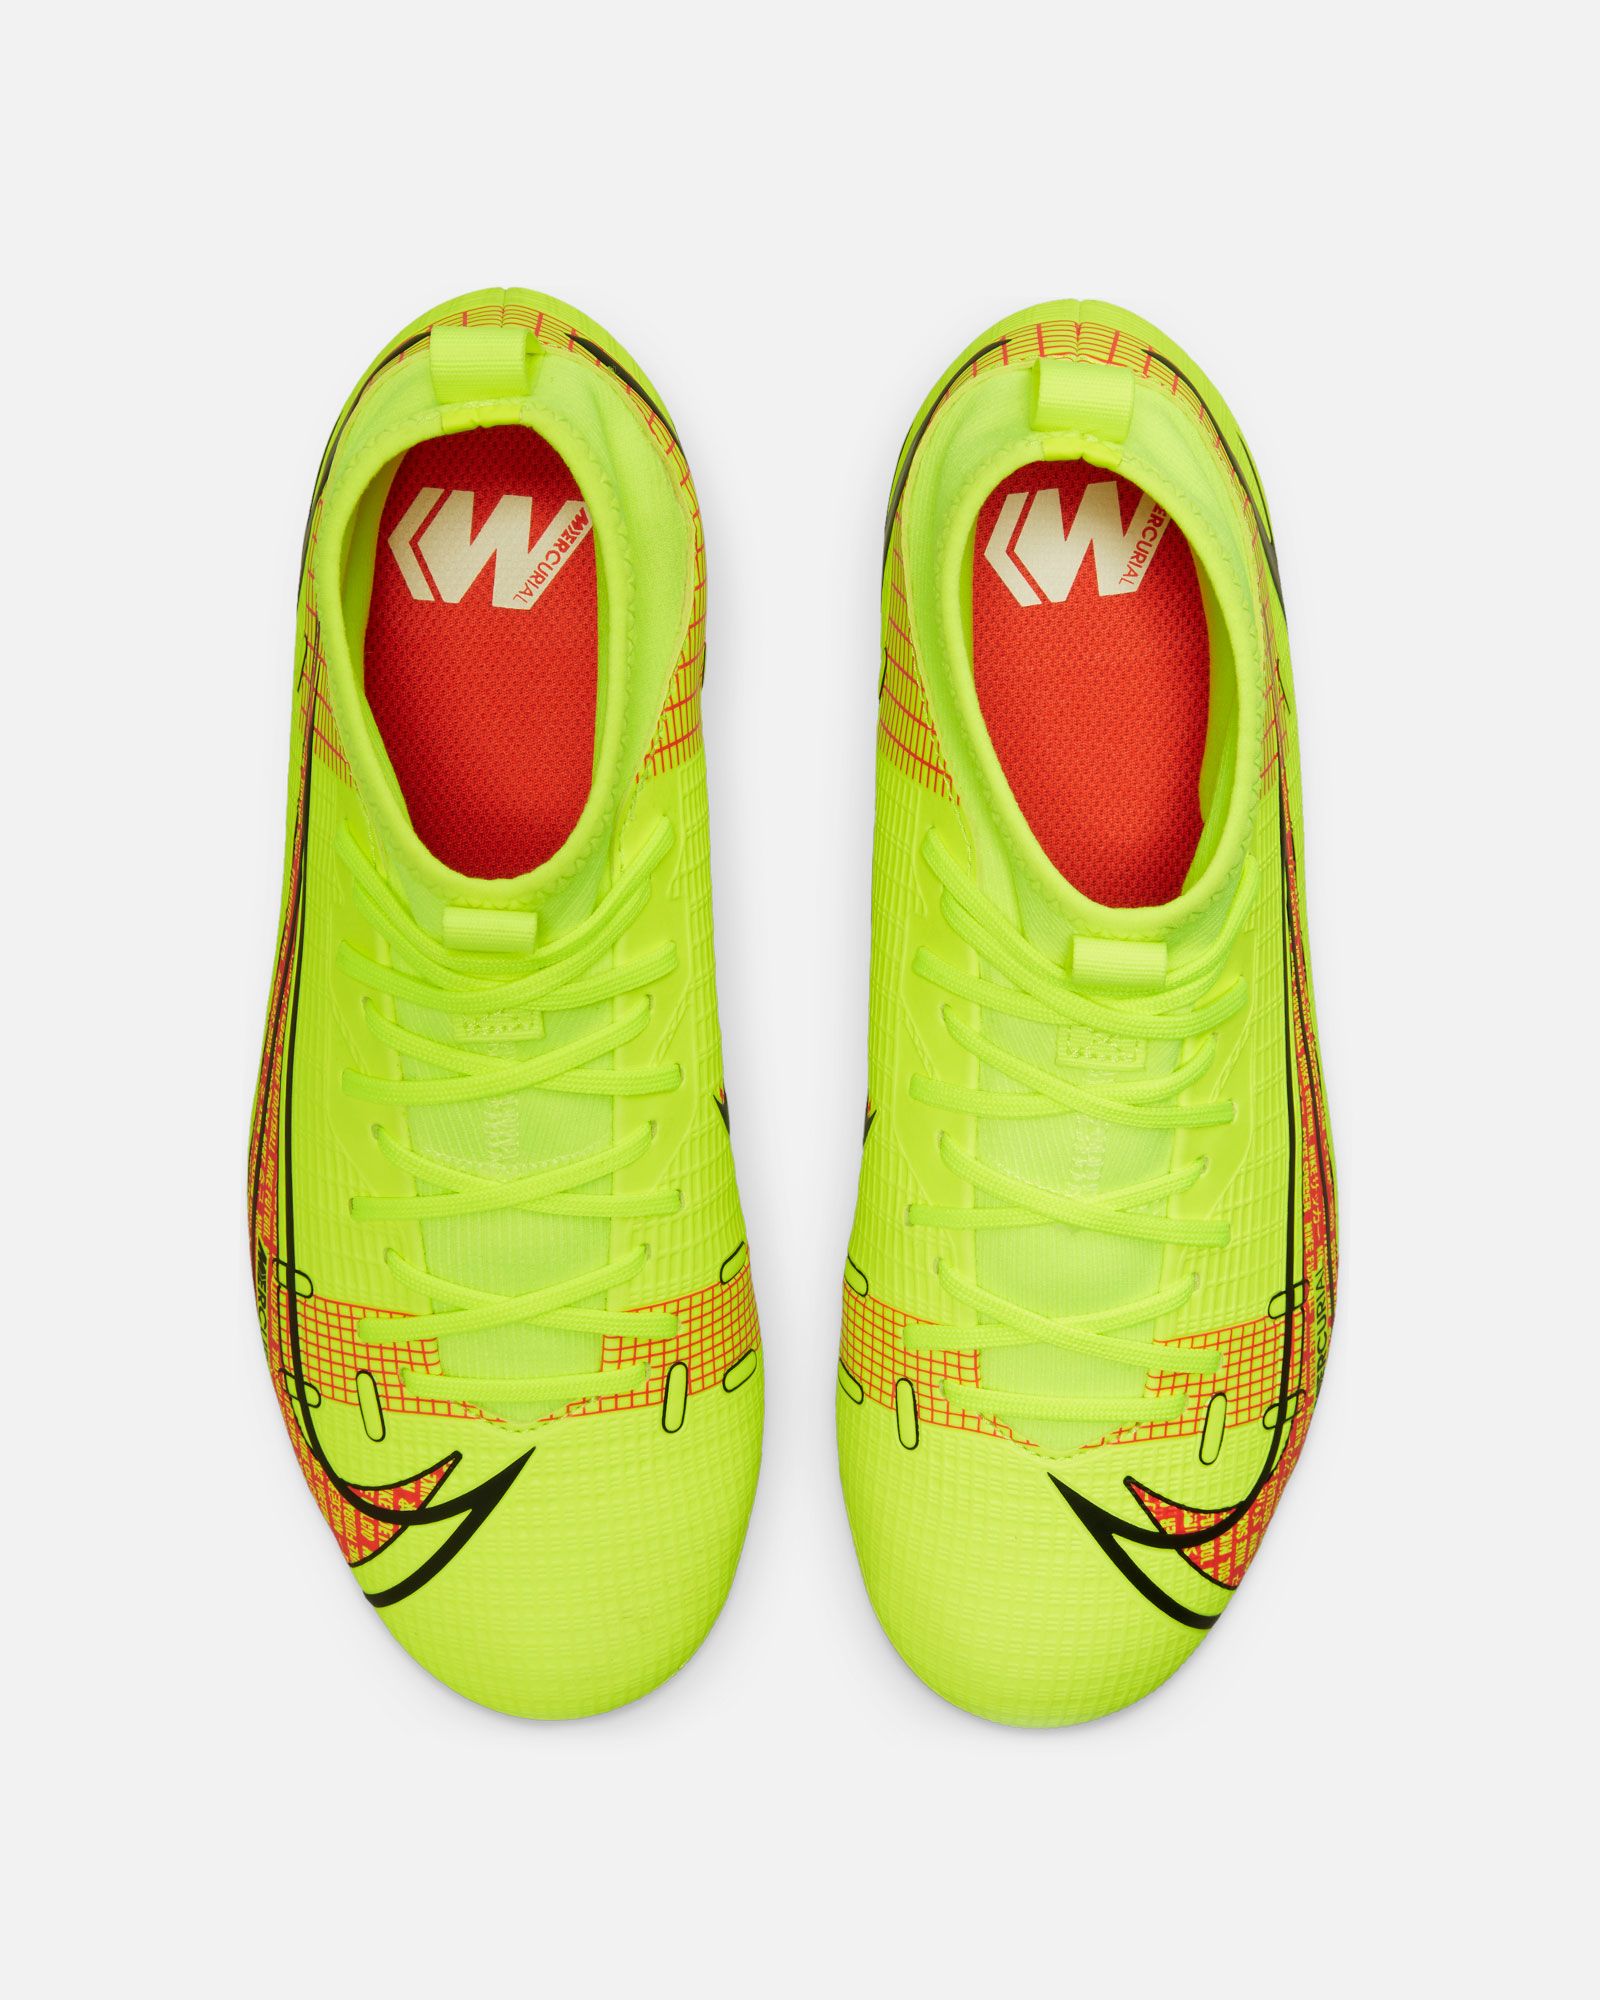 Botas Nike Mercurial Superfly 8 Academy AG - Fútbol Factory